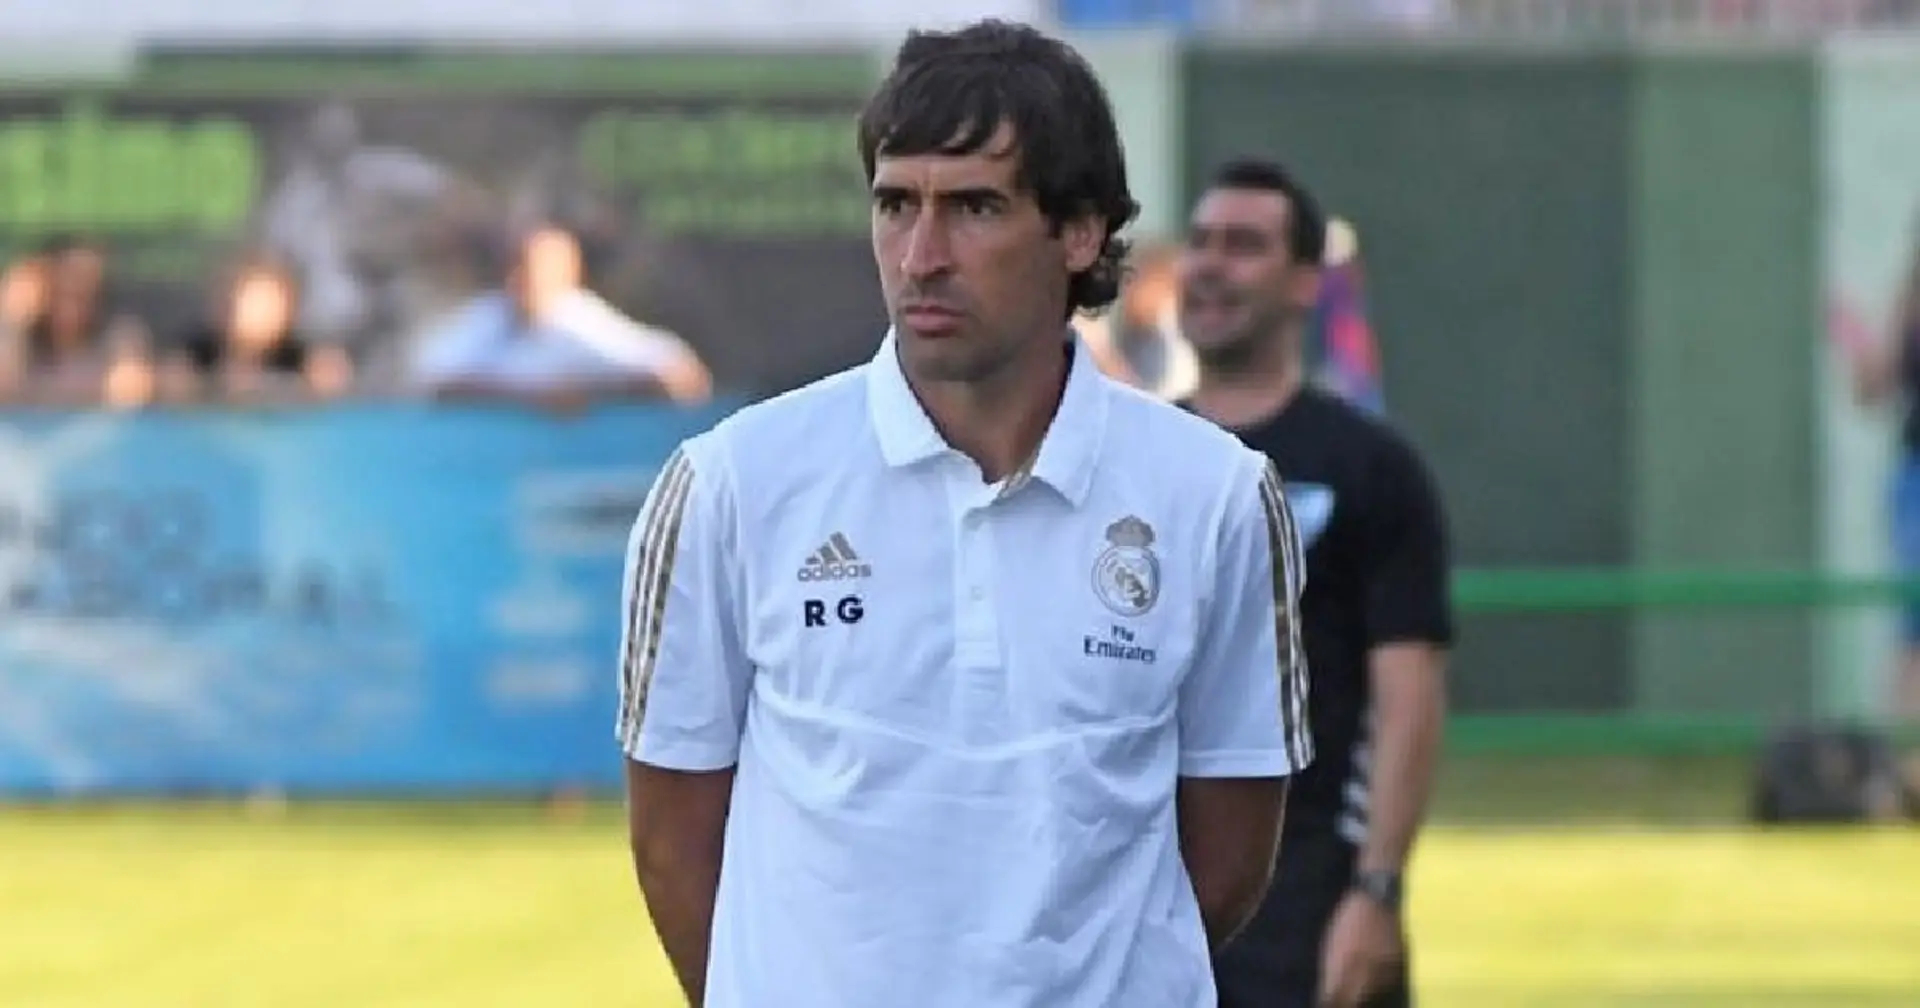 Raul "rejette" un grand poste d'entraîneur pour rester au Real Madrid Castilla